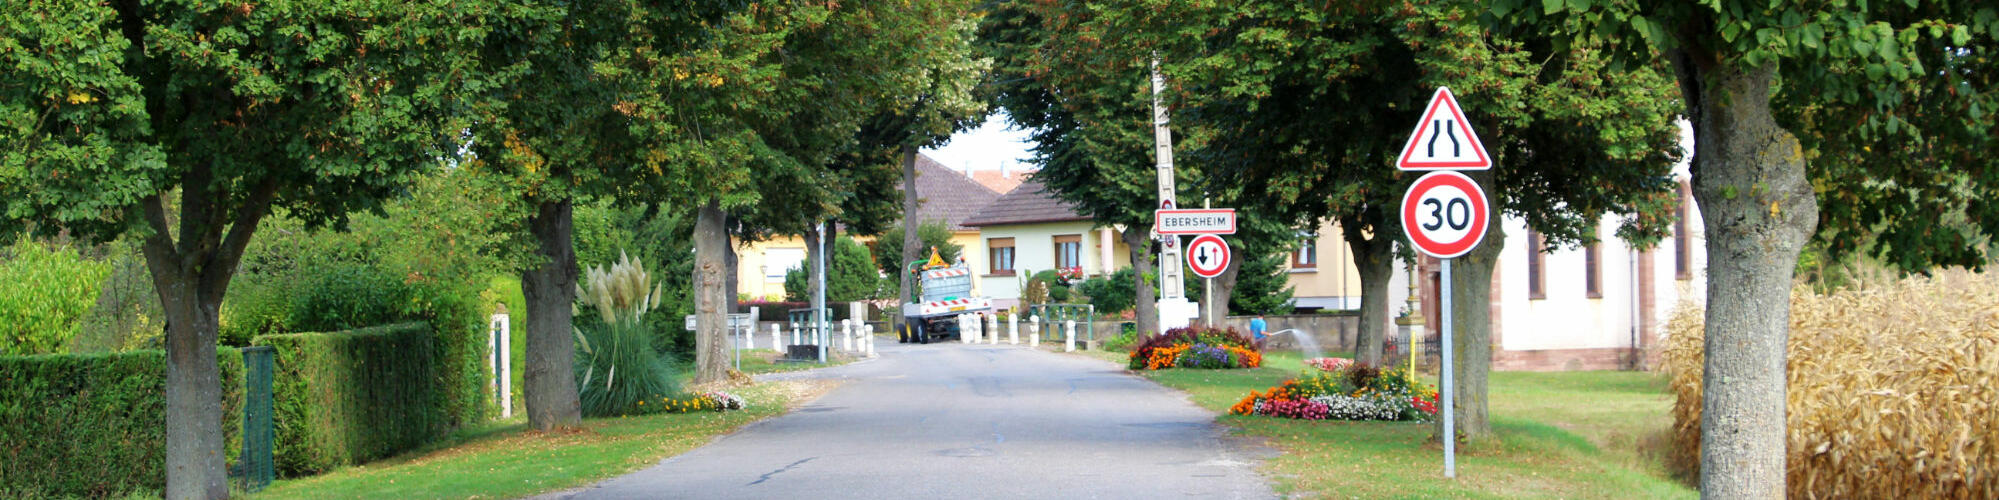 Arrivée au village d'Ebersheim